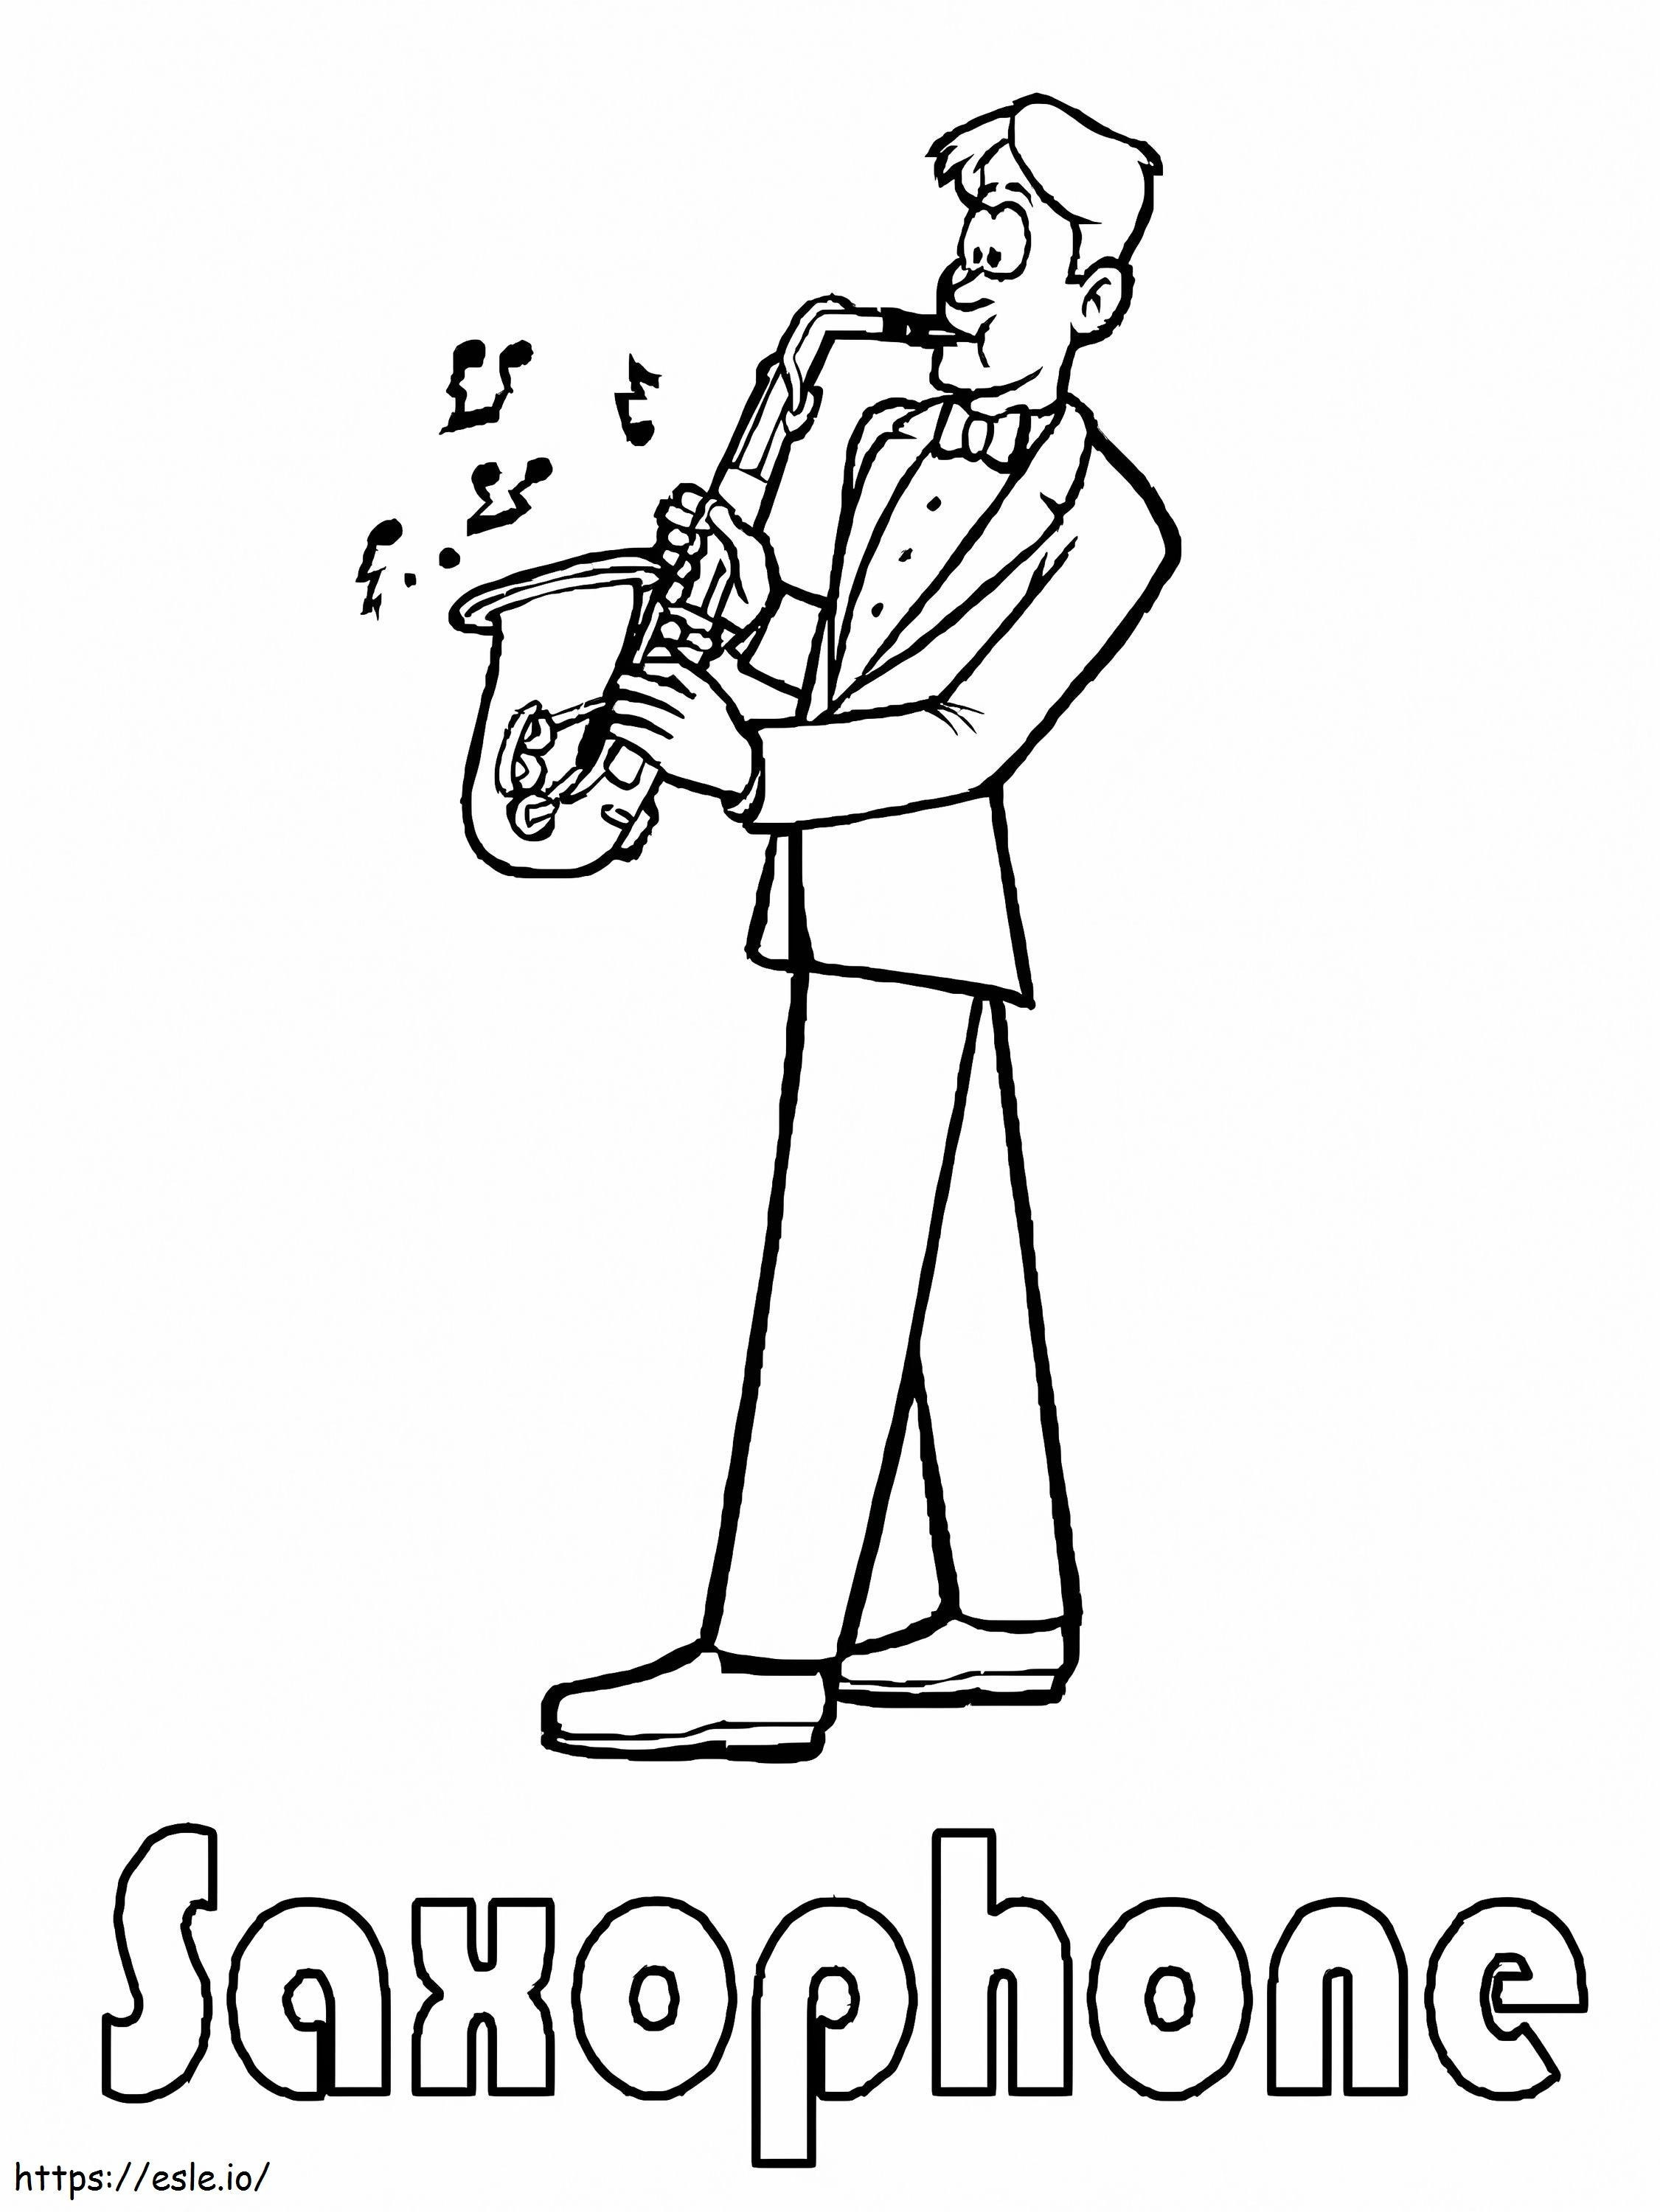 Coloriage Jouer du saxophone à imprimer dessin